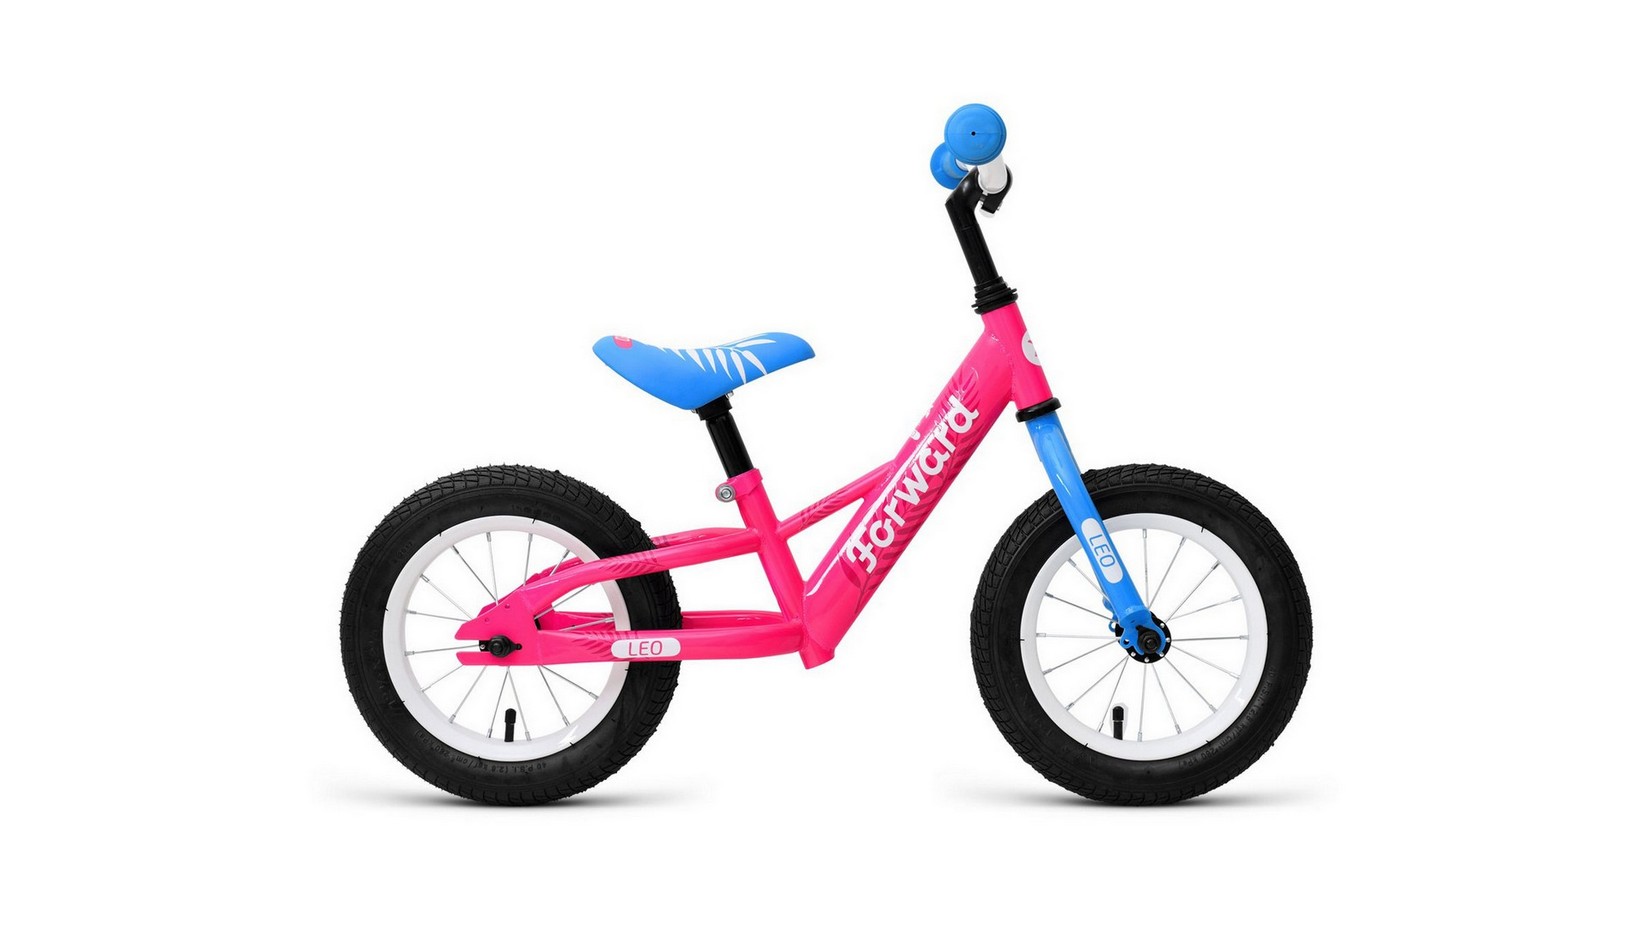 Беговел Forward LEO 2021 розовый 1BKW1R1A1002 женский велосипед stinger laguna pro 26 год 2021 розовый ростовка 15